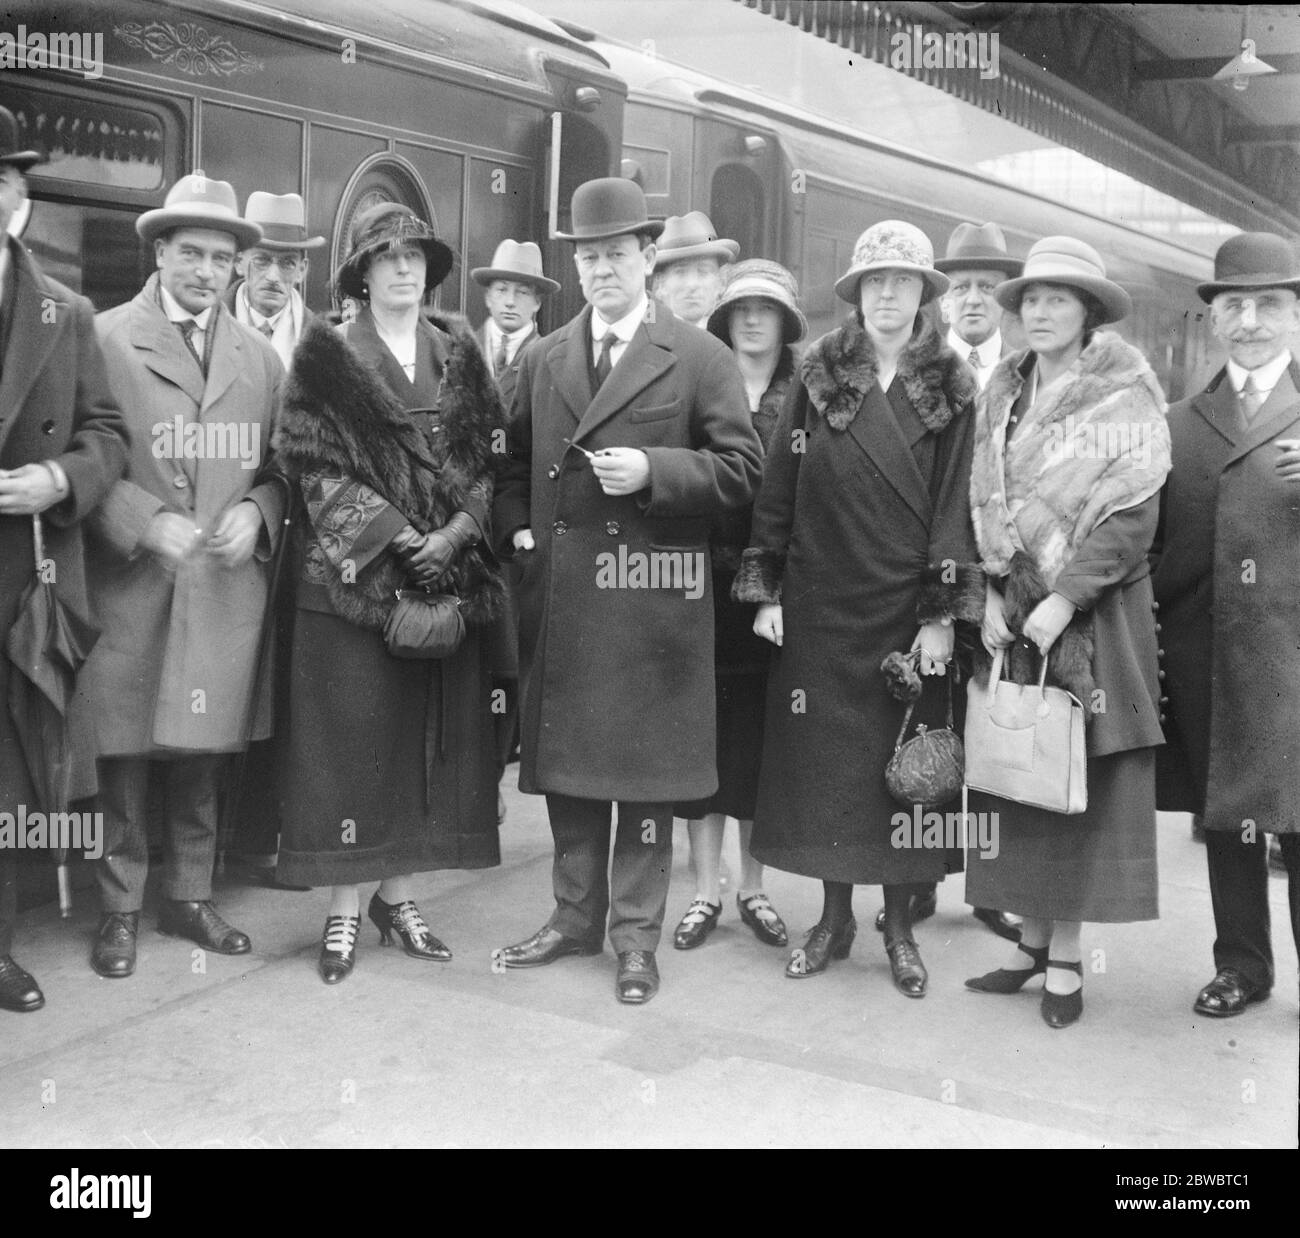 Senator Wilson kehrt nach Australien zurück. Senator Wilson verließ Victoria Station auf dem Weg nach Australien. Senator Wilson mit seiner Frau und zwei Töchtern und Mitarbeitern. 10 Mai 1924 Stockfoto